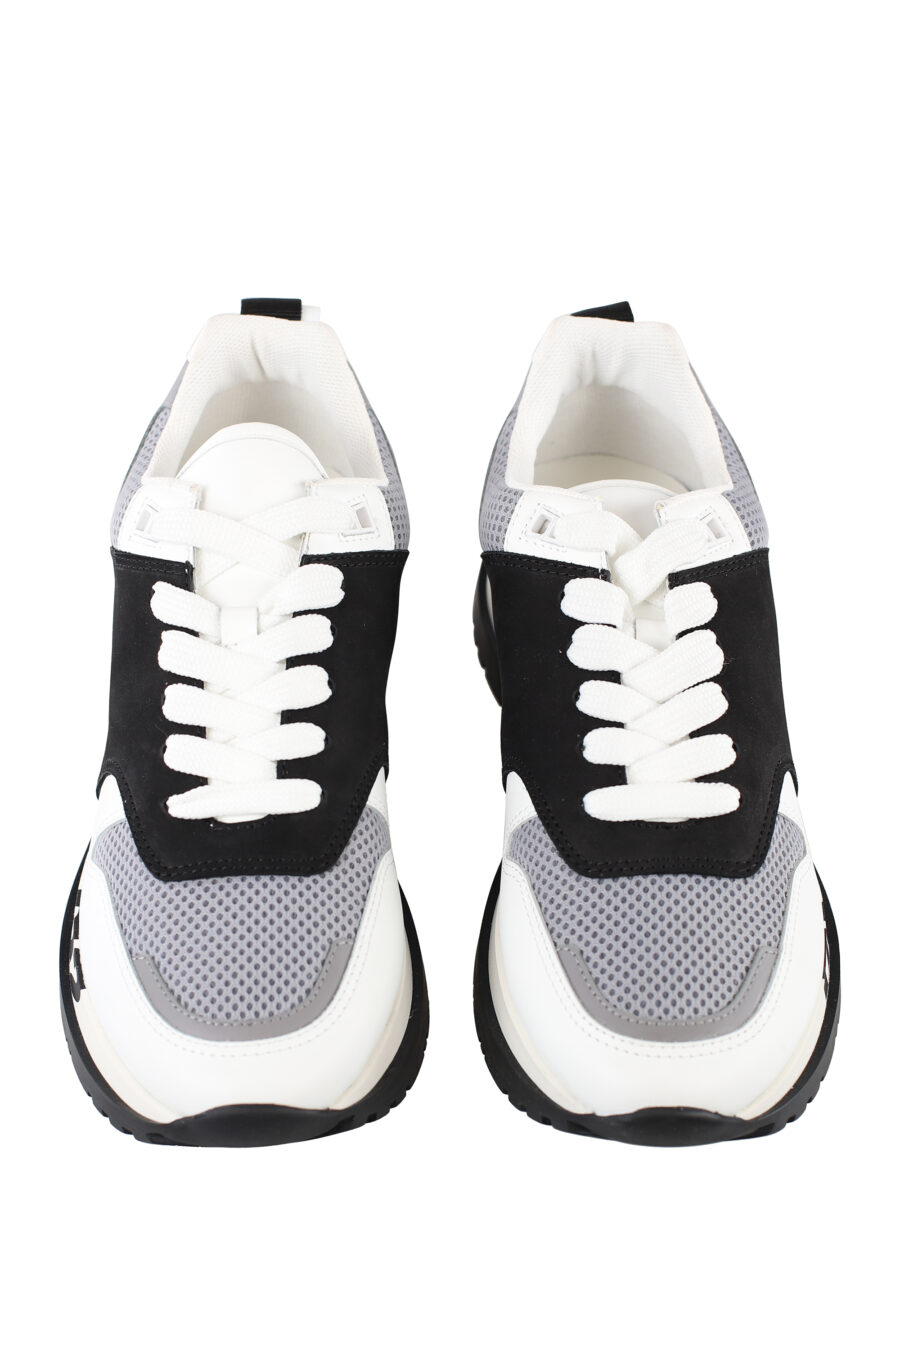 Zapatillas blancas con negro y detalle gris con logo en suela - IMG 6719